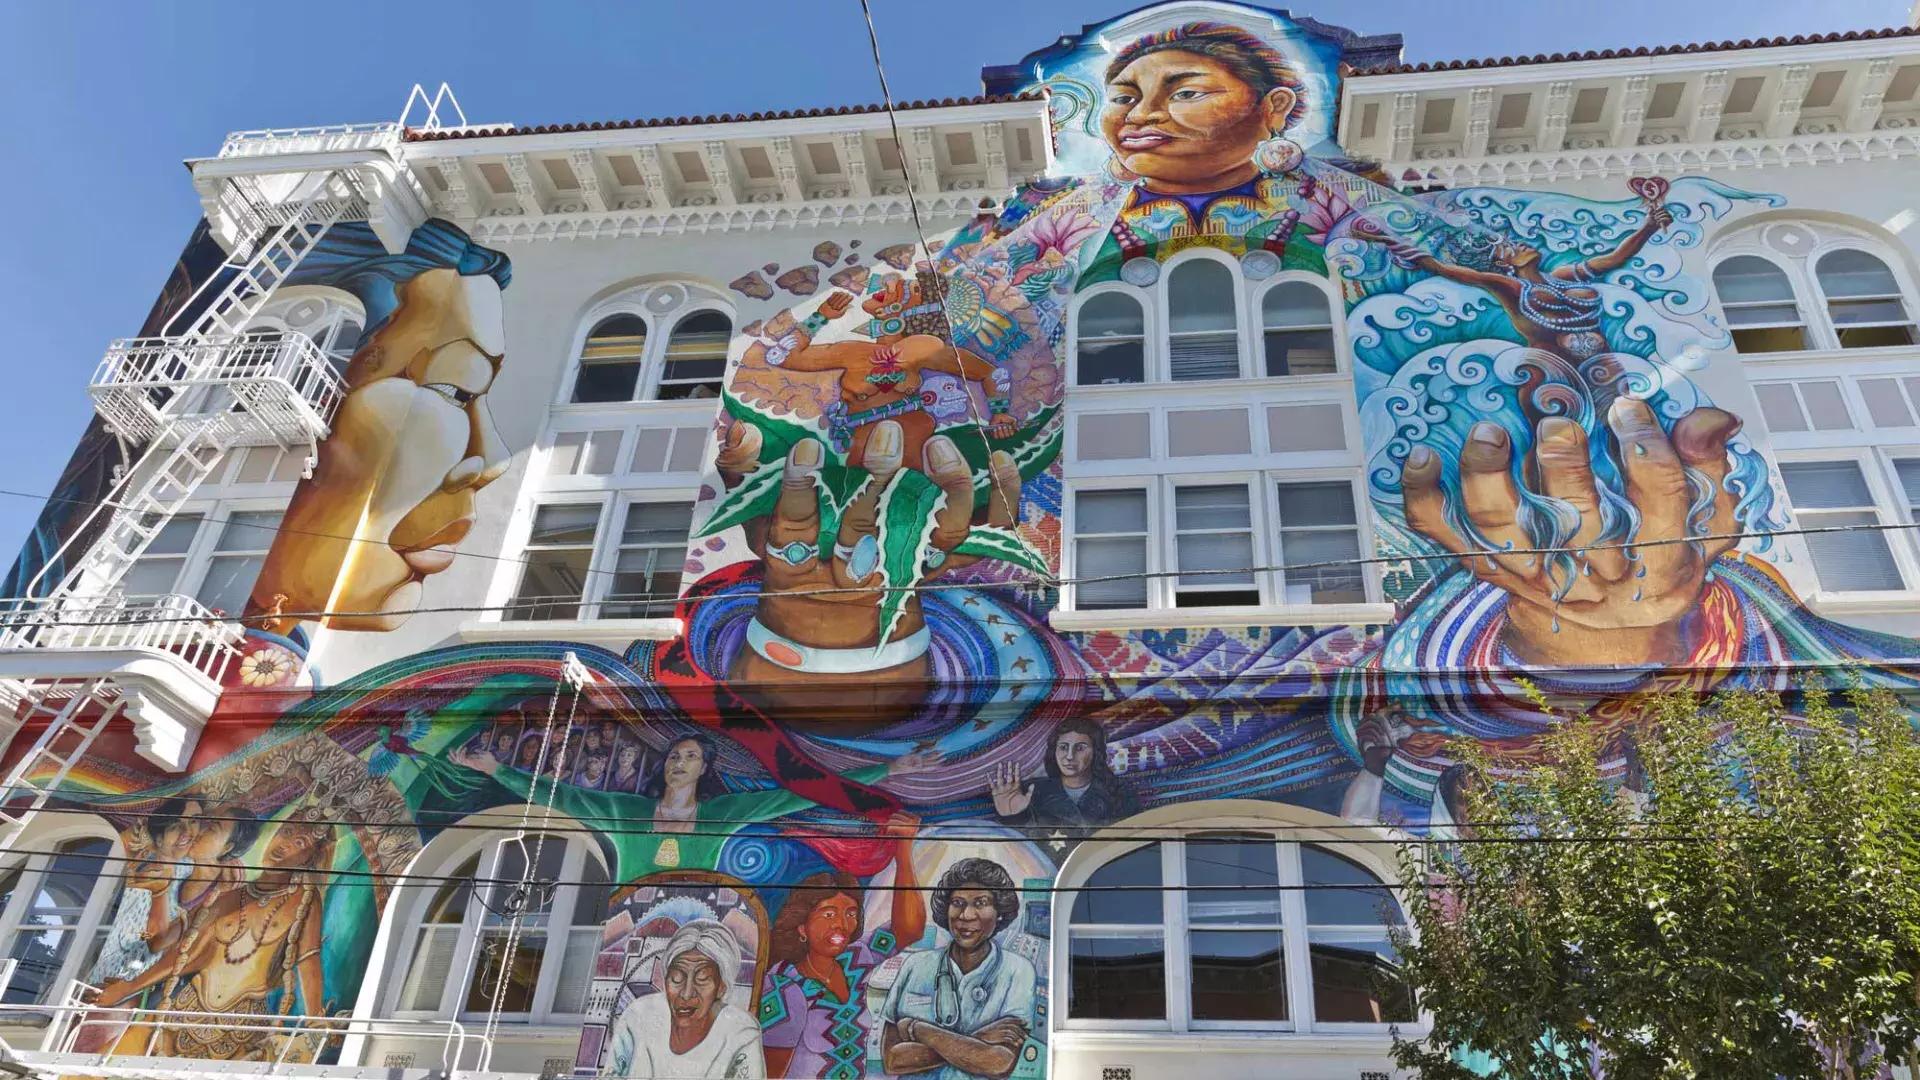 Um mural colorido e em grande escala cobre a lateral do Edifício das Mulheres no教会区 de São Francisco.